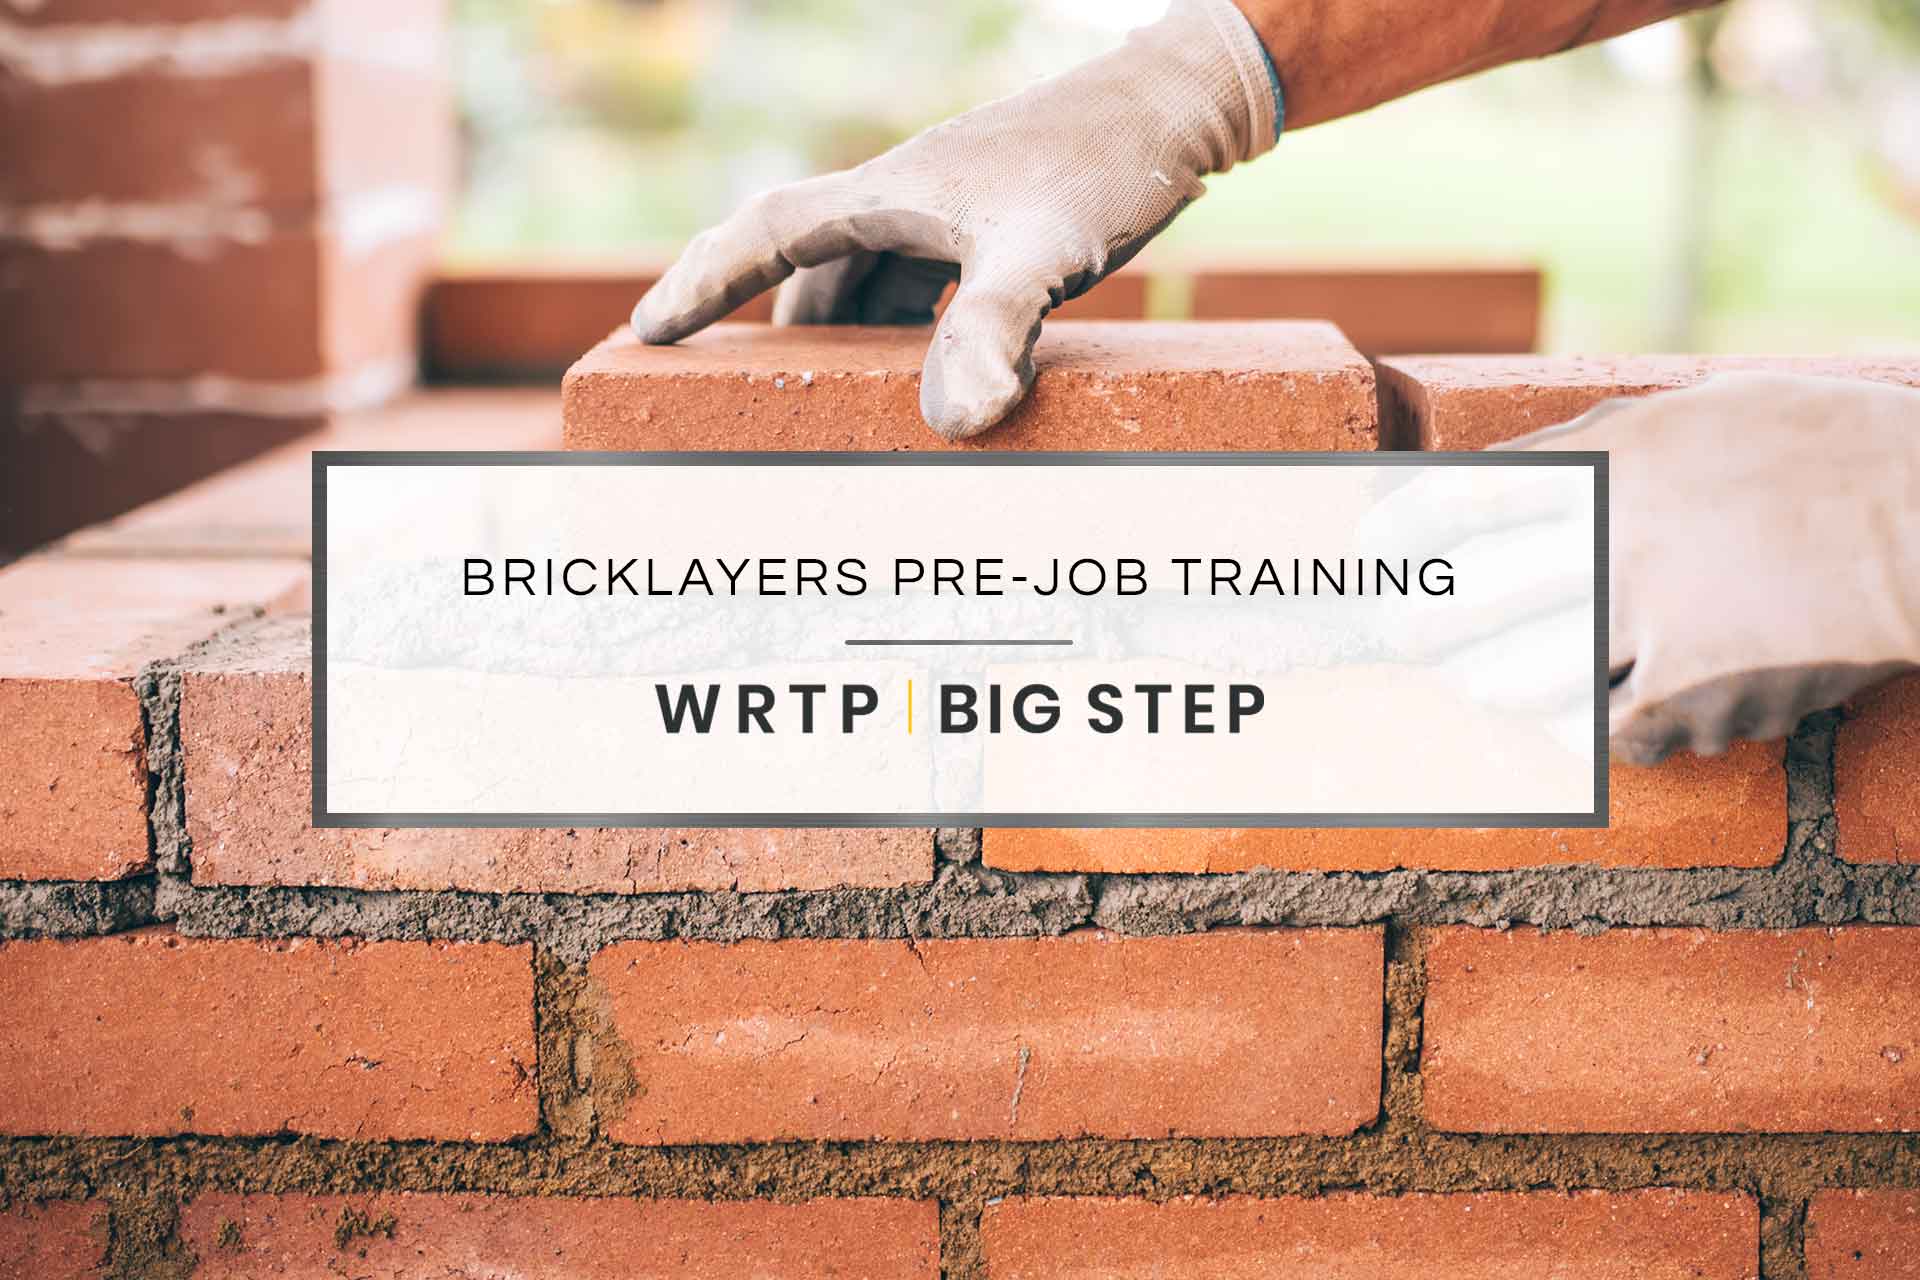 Bricklayers Pre-Job Training | WRTP